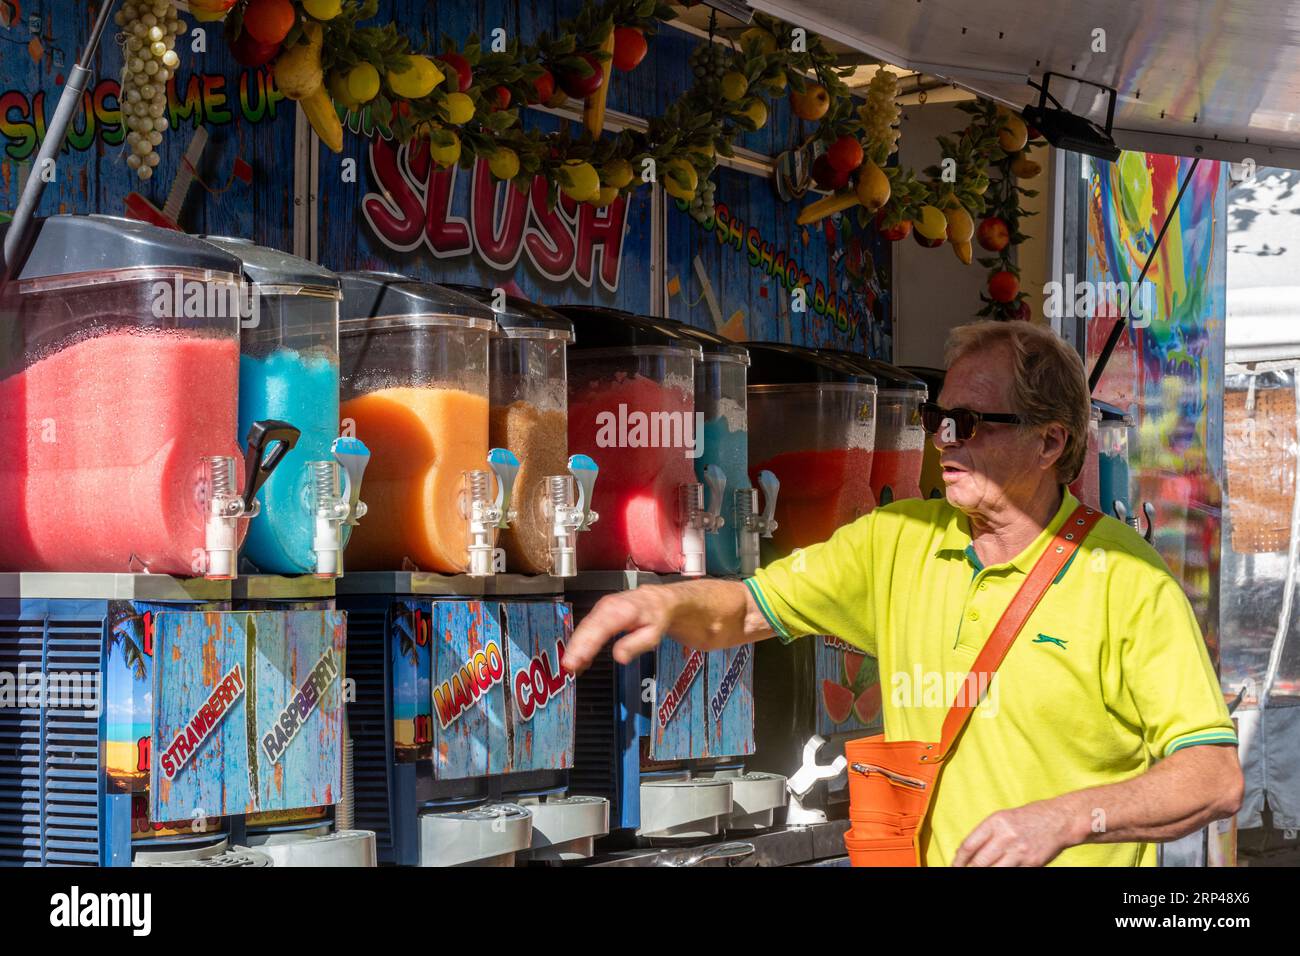 Stand de Slush avec un homme vendant des boissons aux fruits glacés colorés sur un marché dans le Surrey, Angleterre, Royaume-Uni Banque D'Images